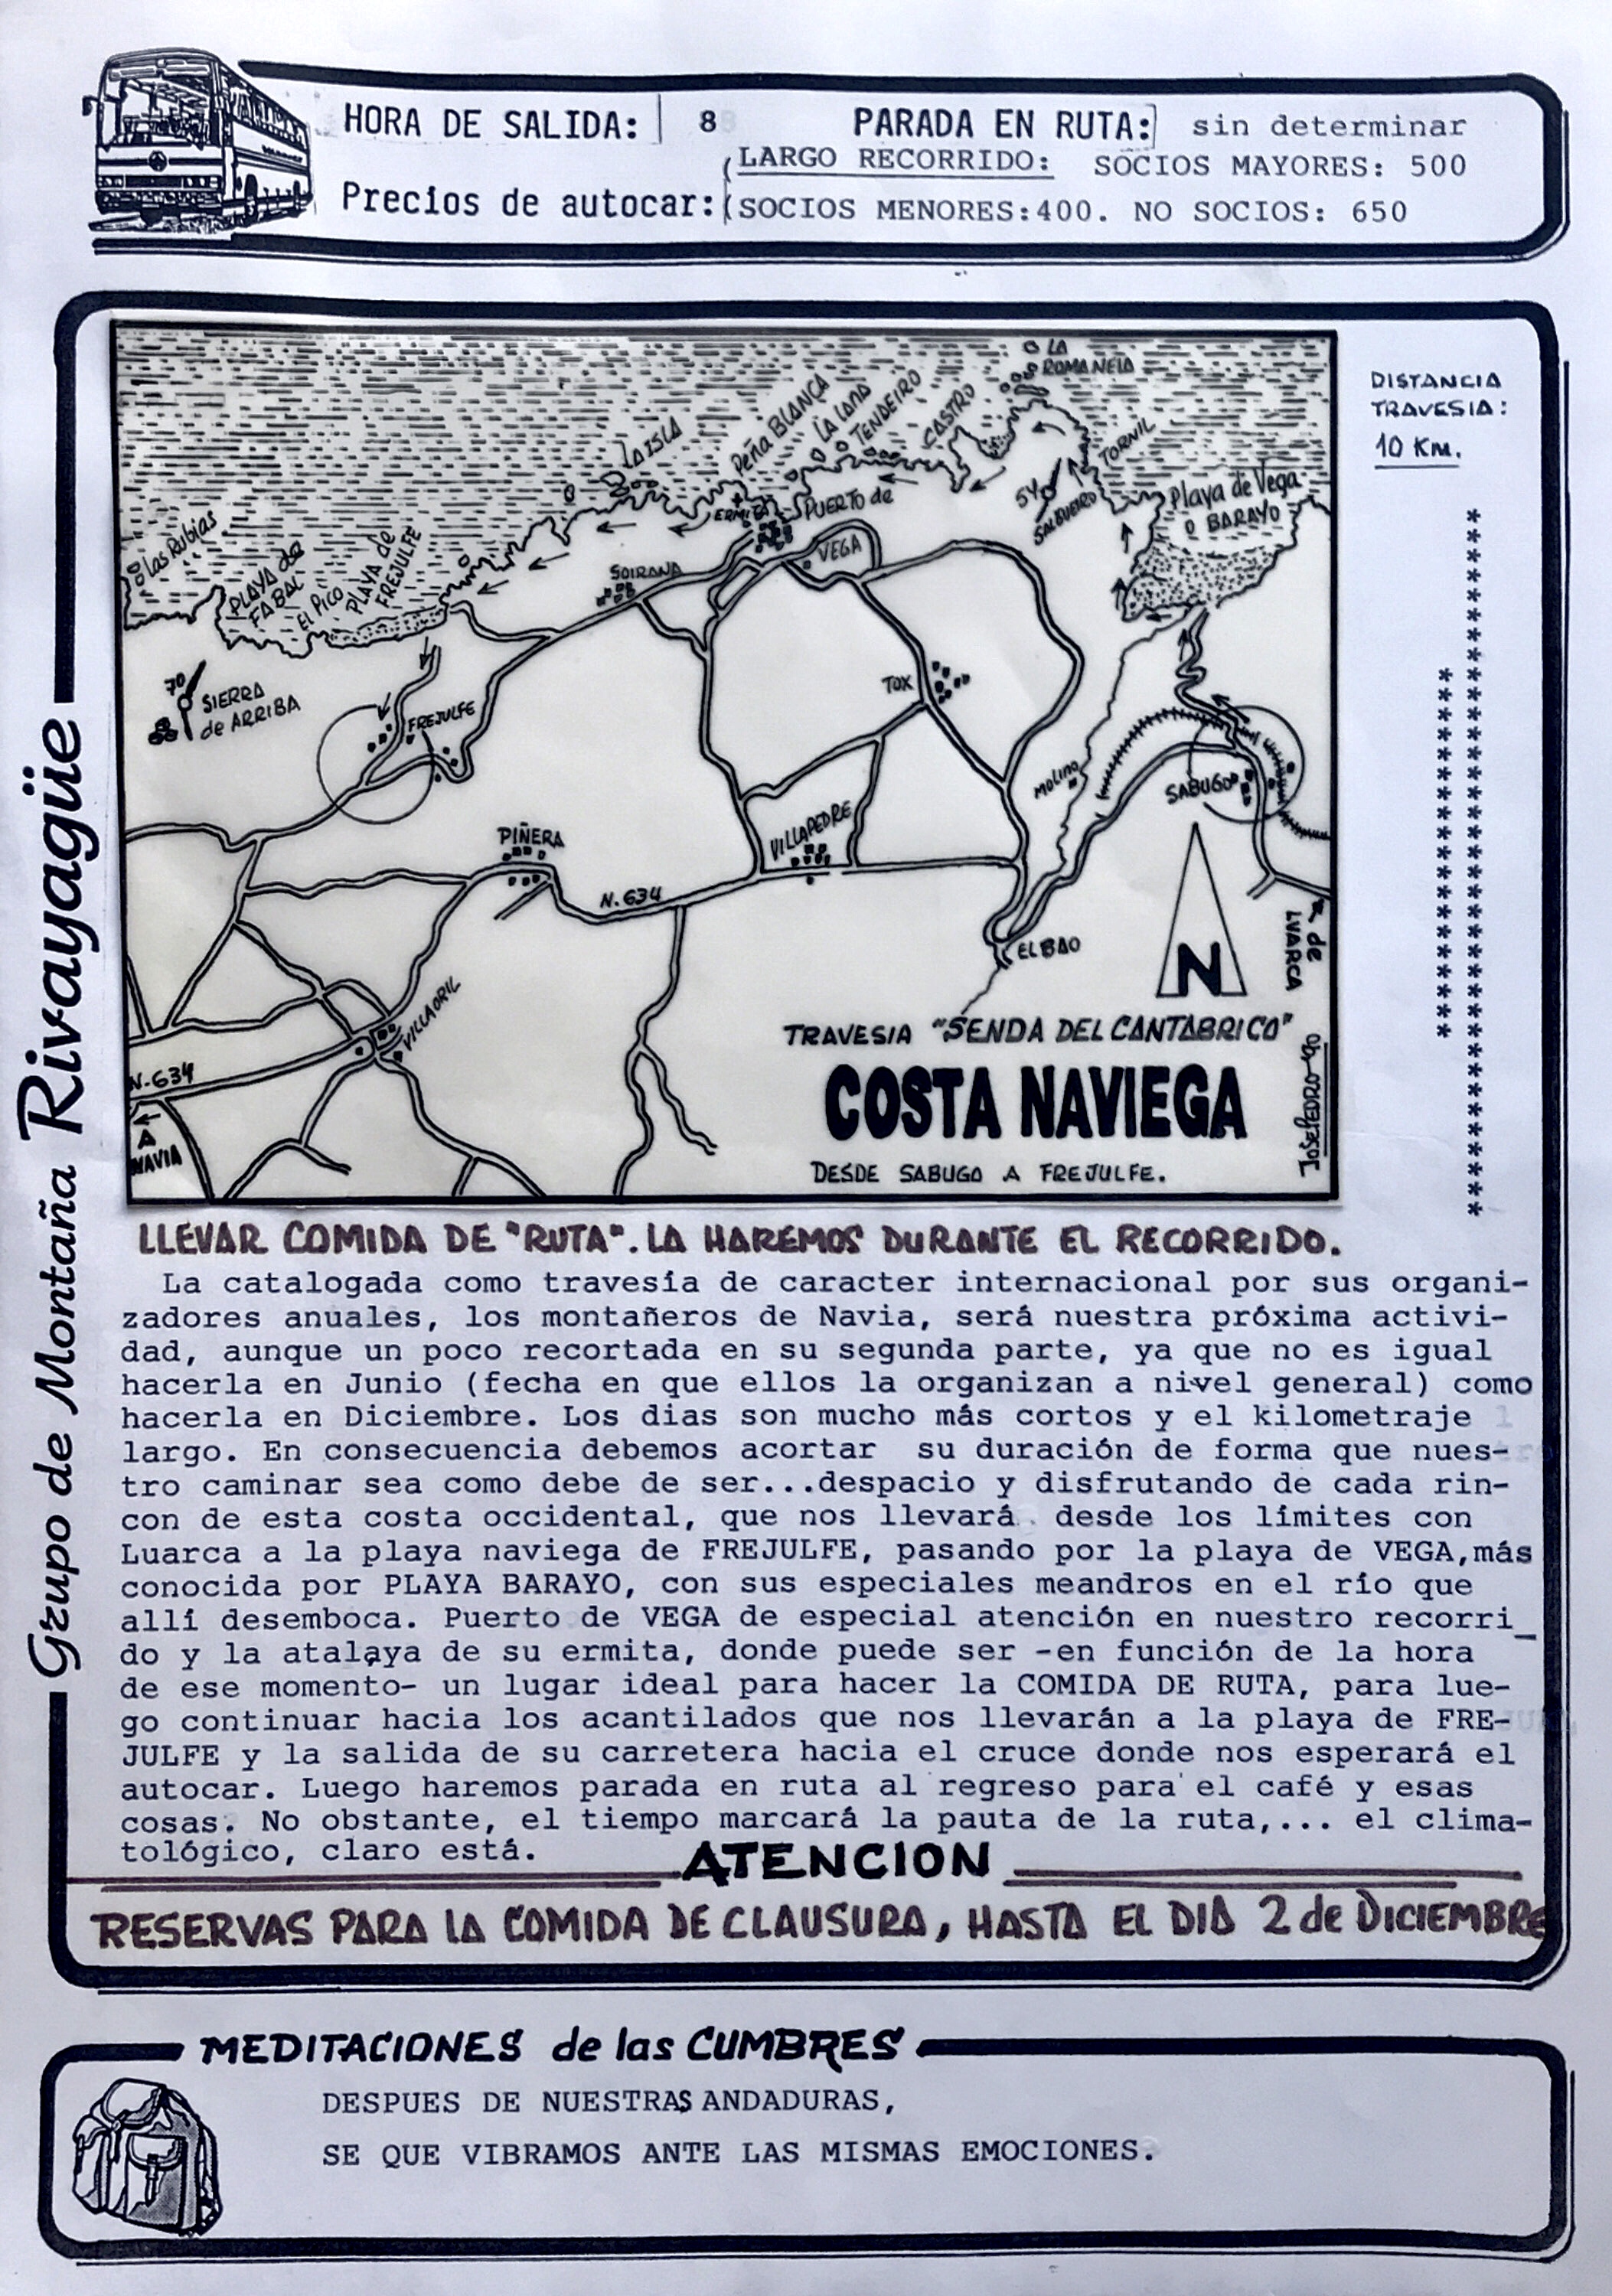 2 diciembre, 1990: Senda del Cantábrico, Navia